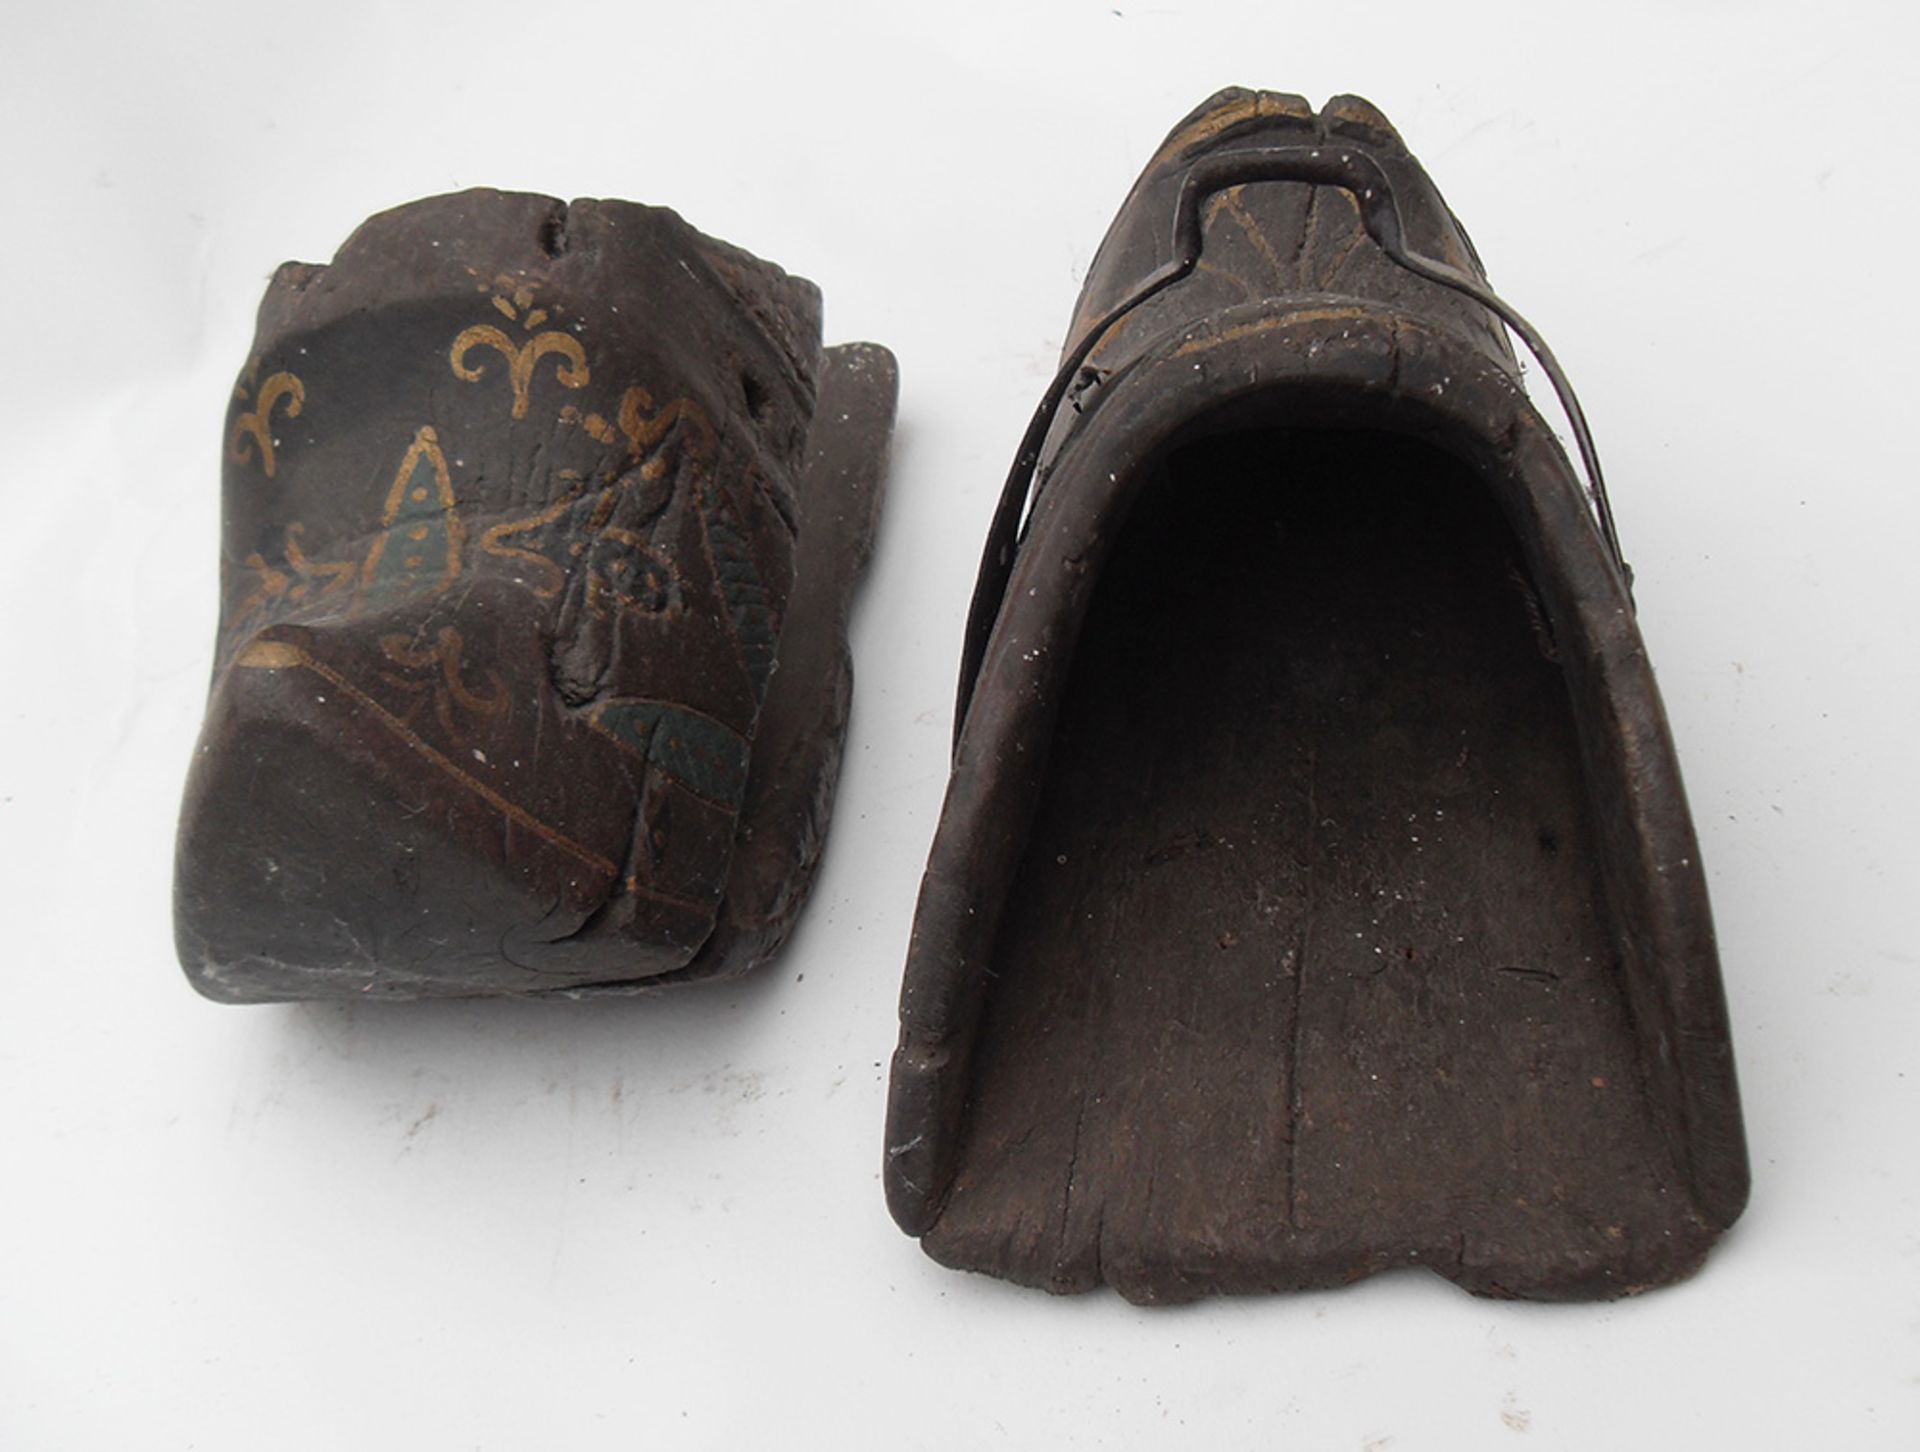 Antique pair of unusual wooden stirrups - Image 2 of 2